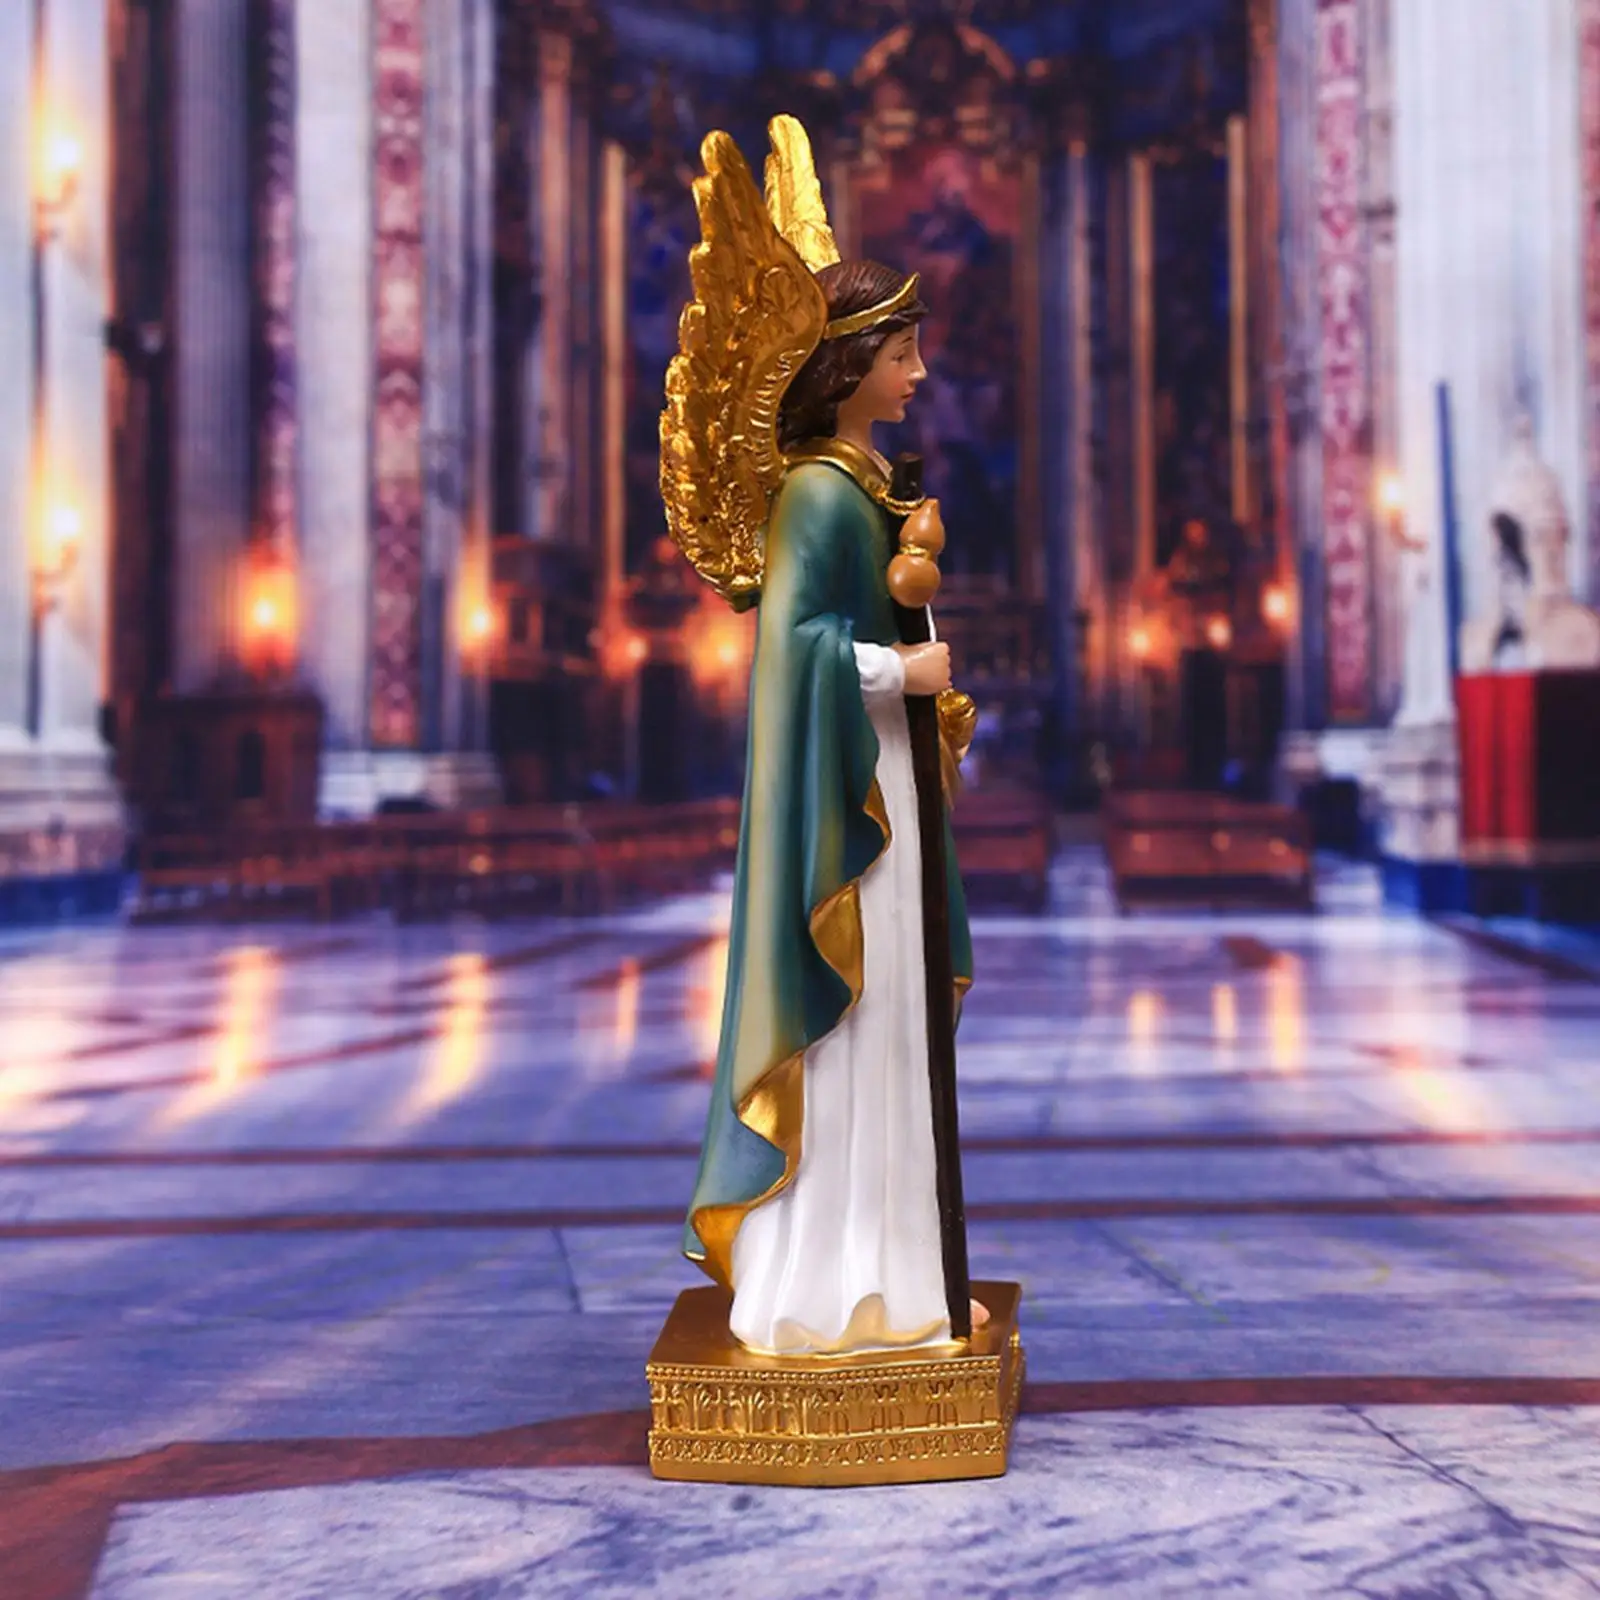 Resin Angel Figurine Religious Mary Statue for Desktop Shelf Living Room Xmas Decor